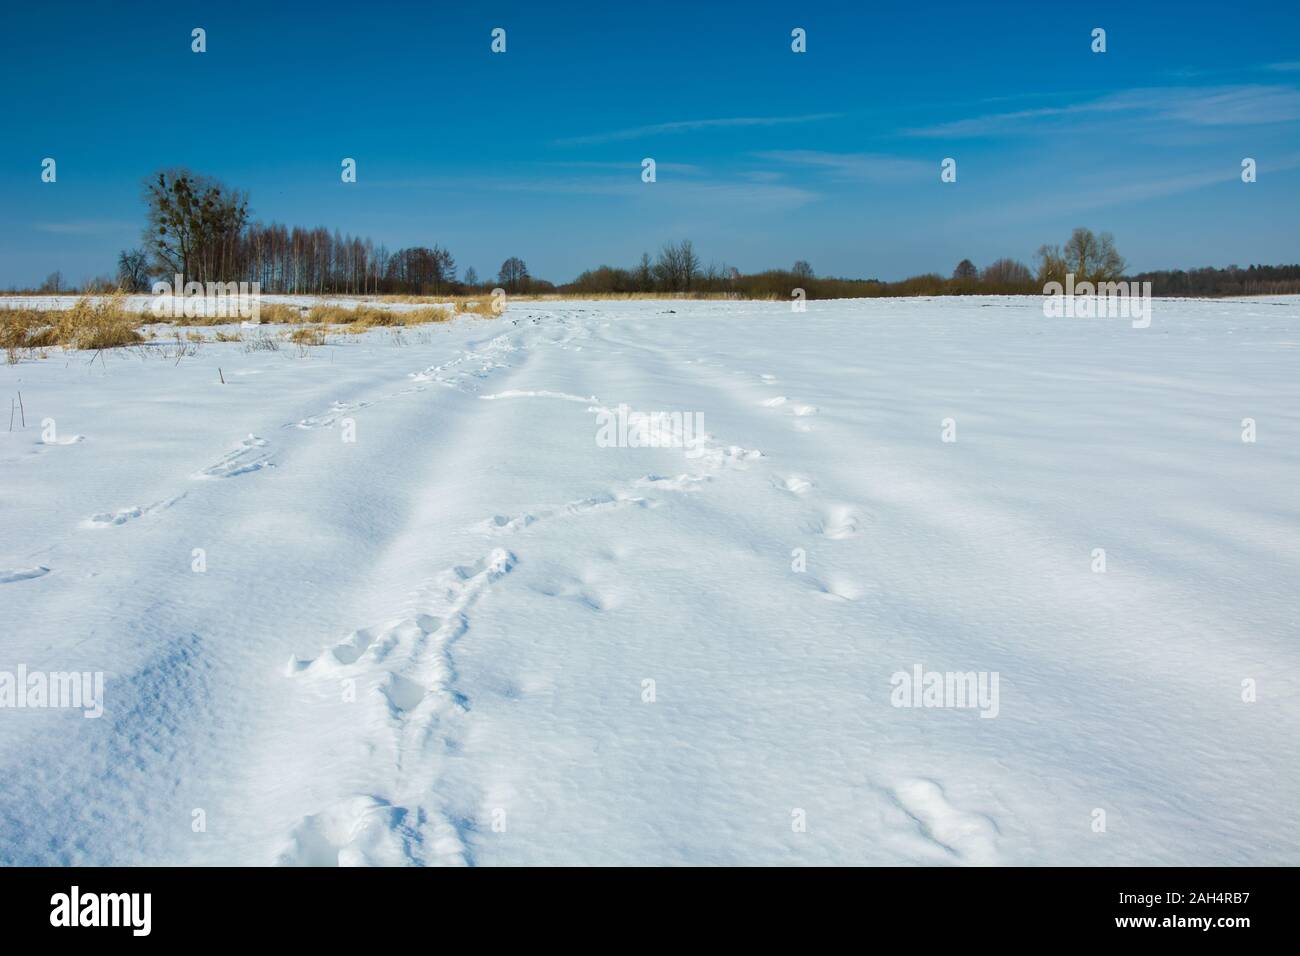 Route rurale couverte de neige, les arbres à l'horizon et le ciel bleu, en vue d'hiver Zarzecze, Pologne Banque D'Images